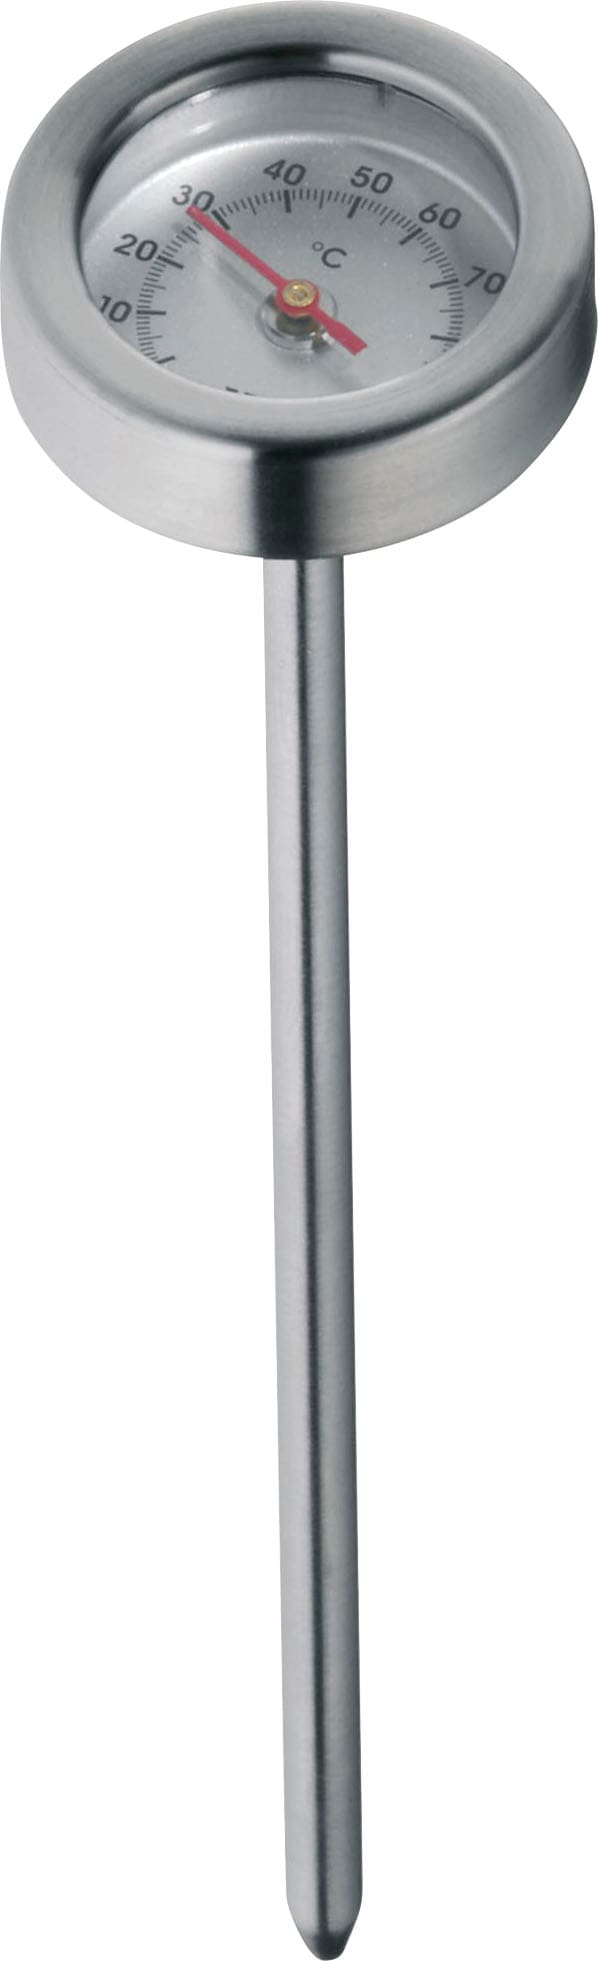 WMF Simmertopf, Cromargan® Edelstahl Rostfrei 18/10, Ø 18 cm, mit Temperaturanzeige, Induktion